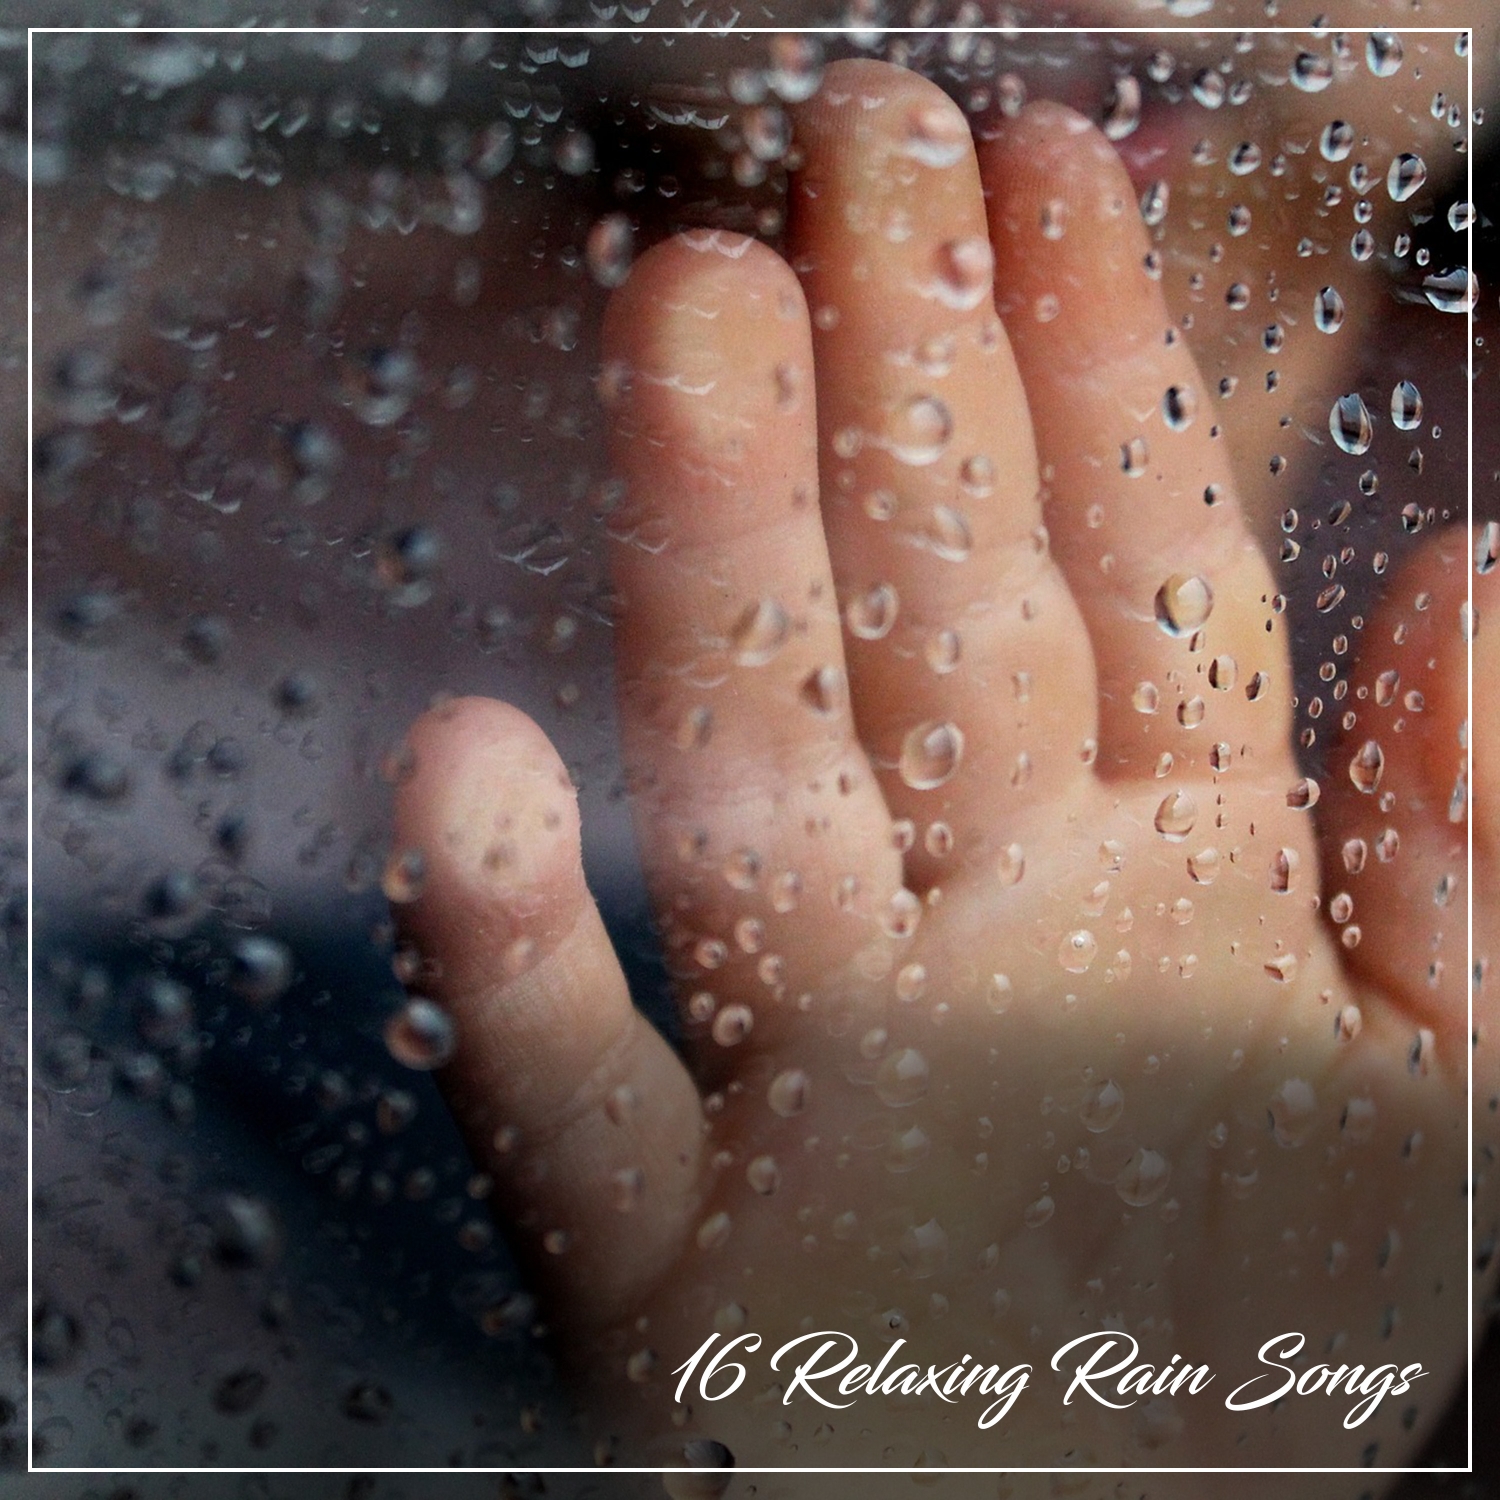 16 Relaxing Rain Songs for Enhanced Wellness